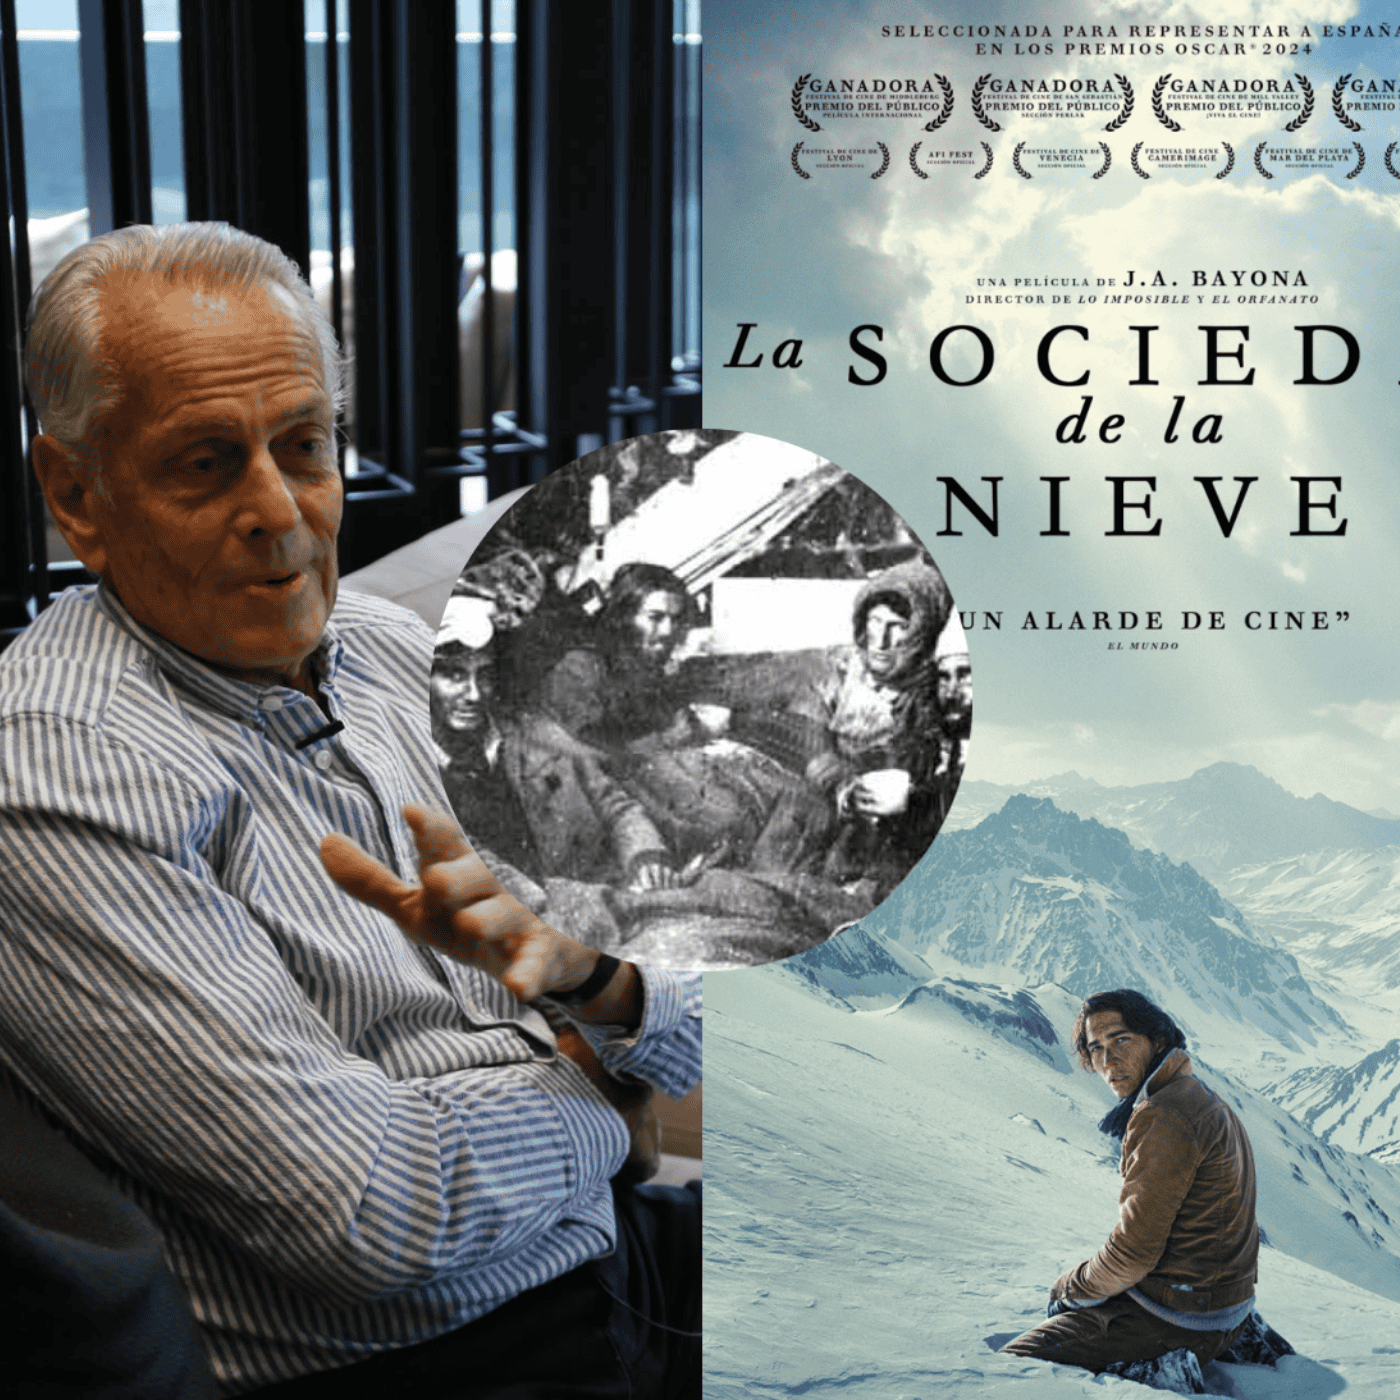 La Sociedad de la Nieve: habla el amigo de los sobrevivientes que escribió  la historia que es furor en Netflix